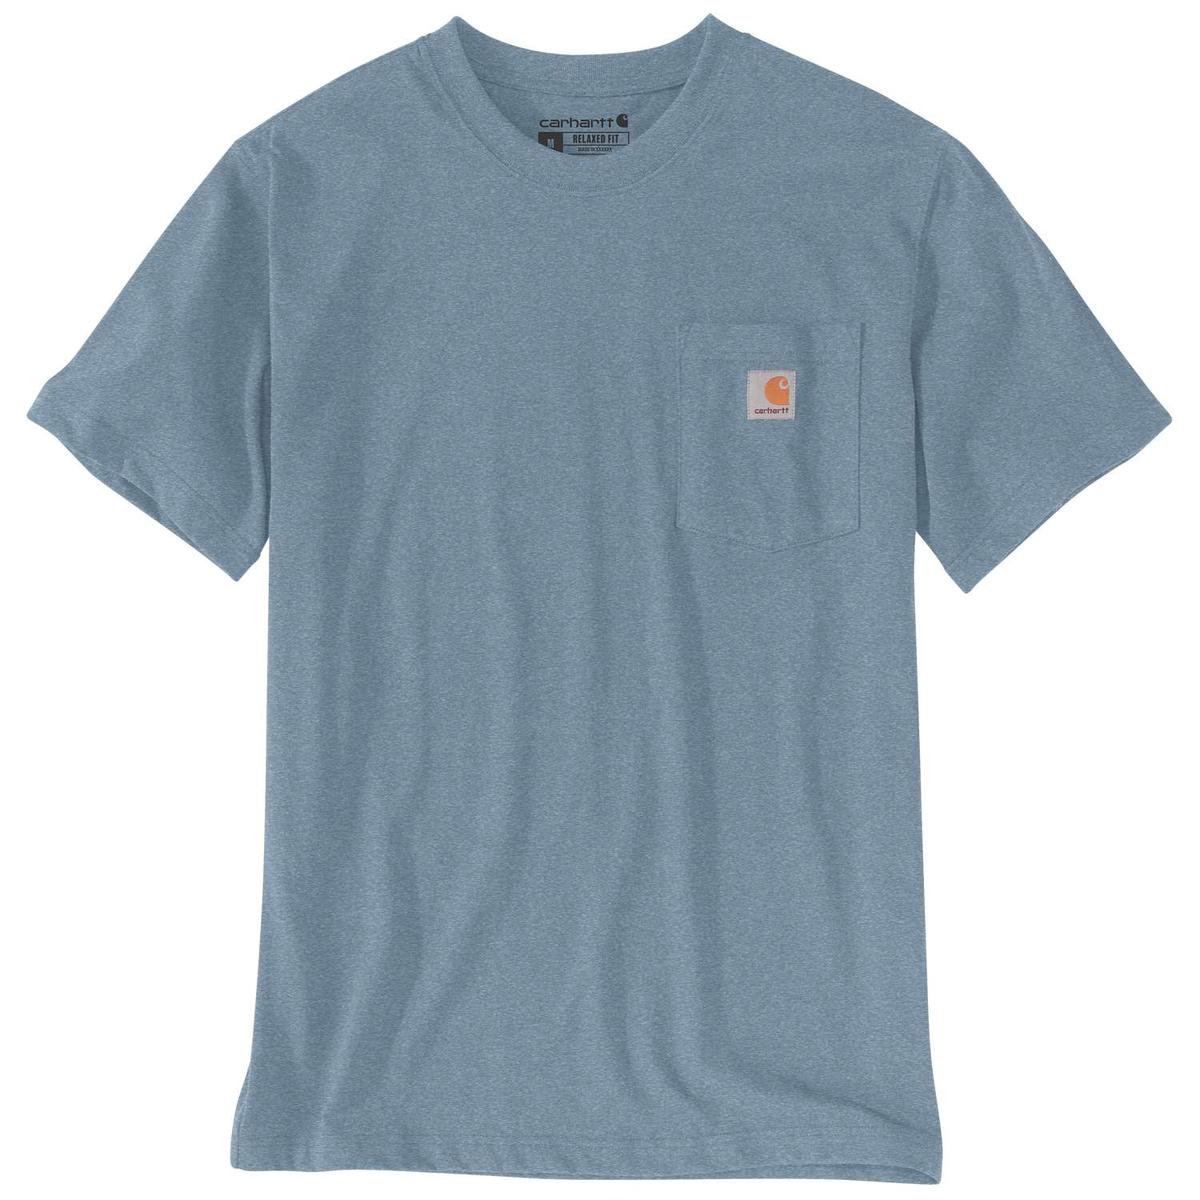 Carhartt T-Shirt mit Brusttasche - 37